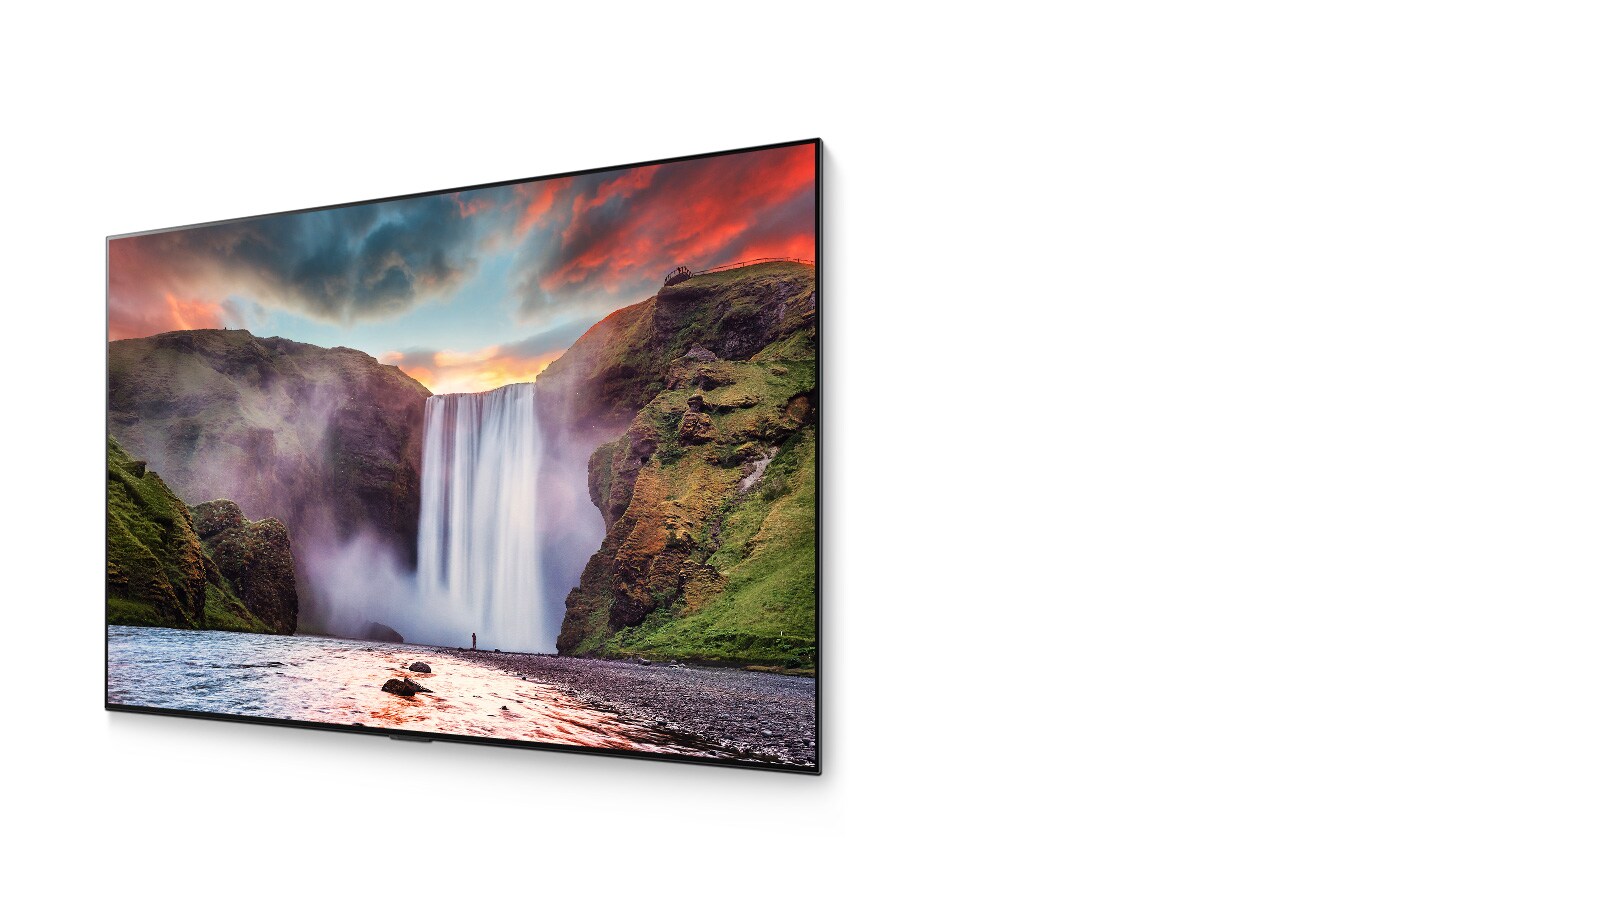 Spektakularni vodopad s prekrasnim krajolikom prikazan na OLED televizoru (reproduciraj video)